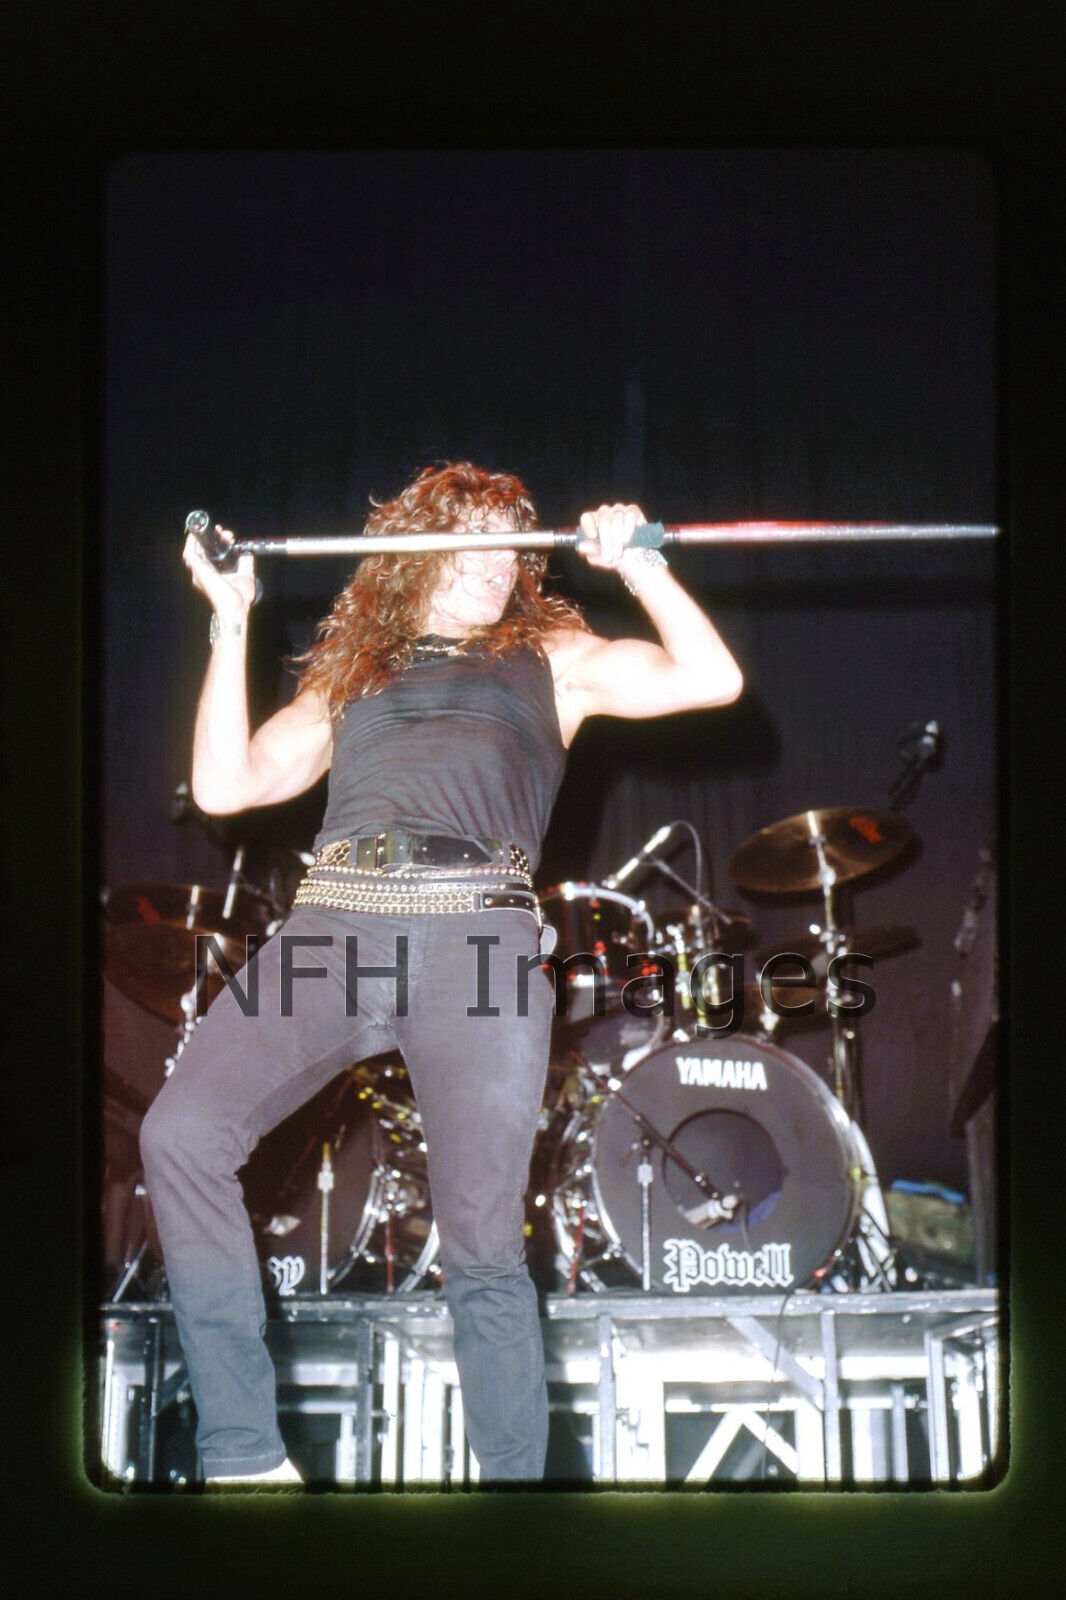 1984 Whitesnake David Coverdale Hair Metal Rock Band Music Live Concert Slide